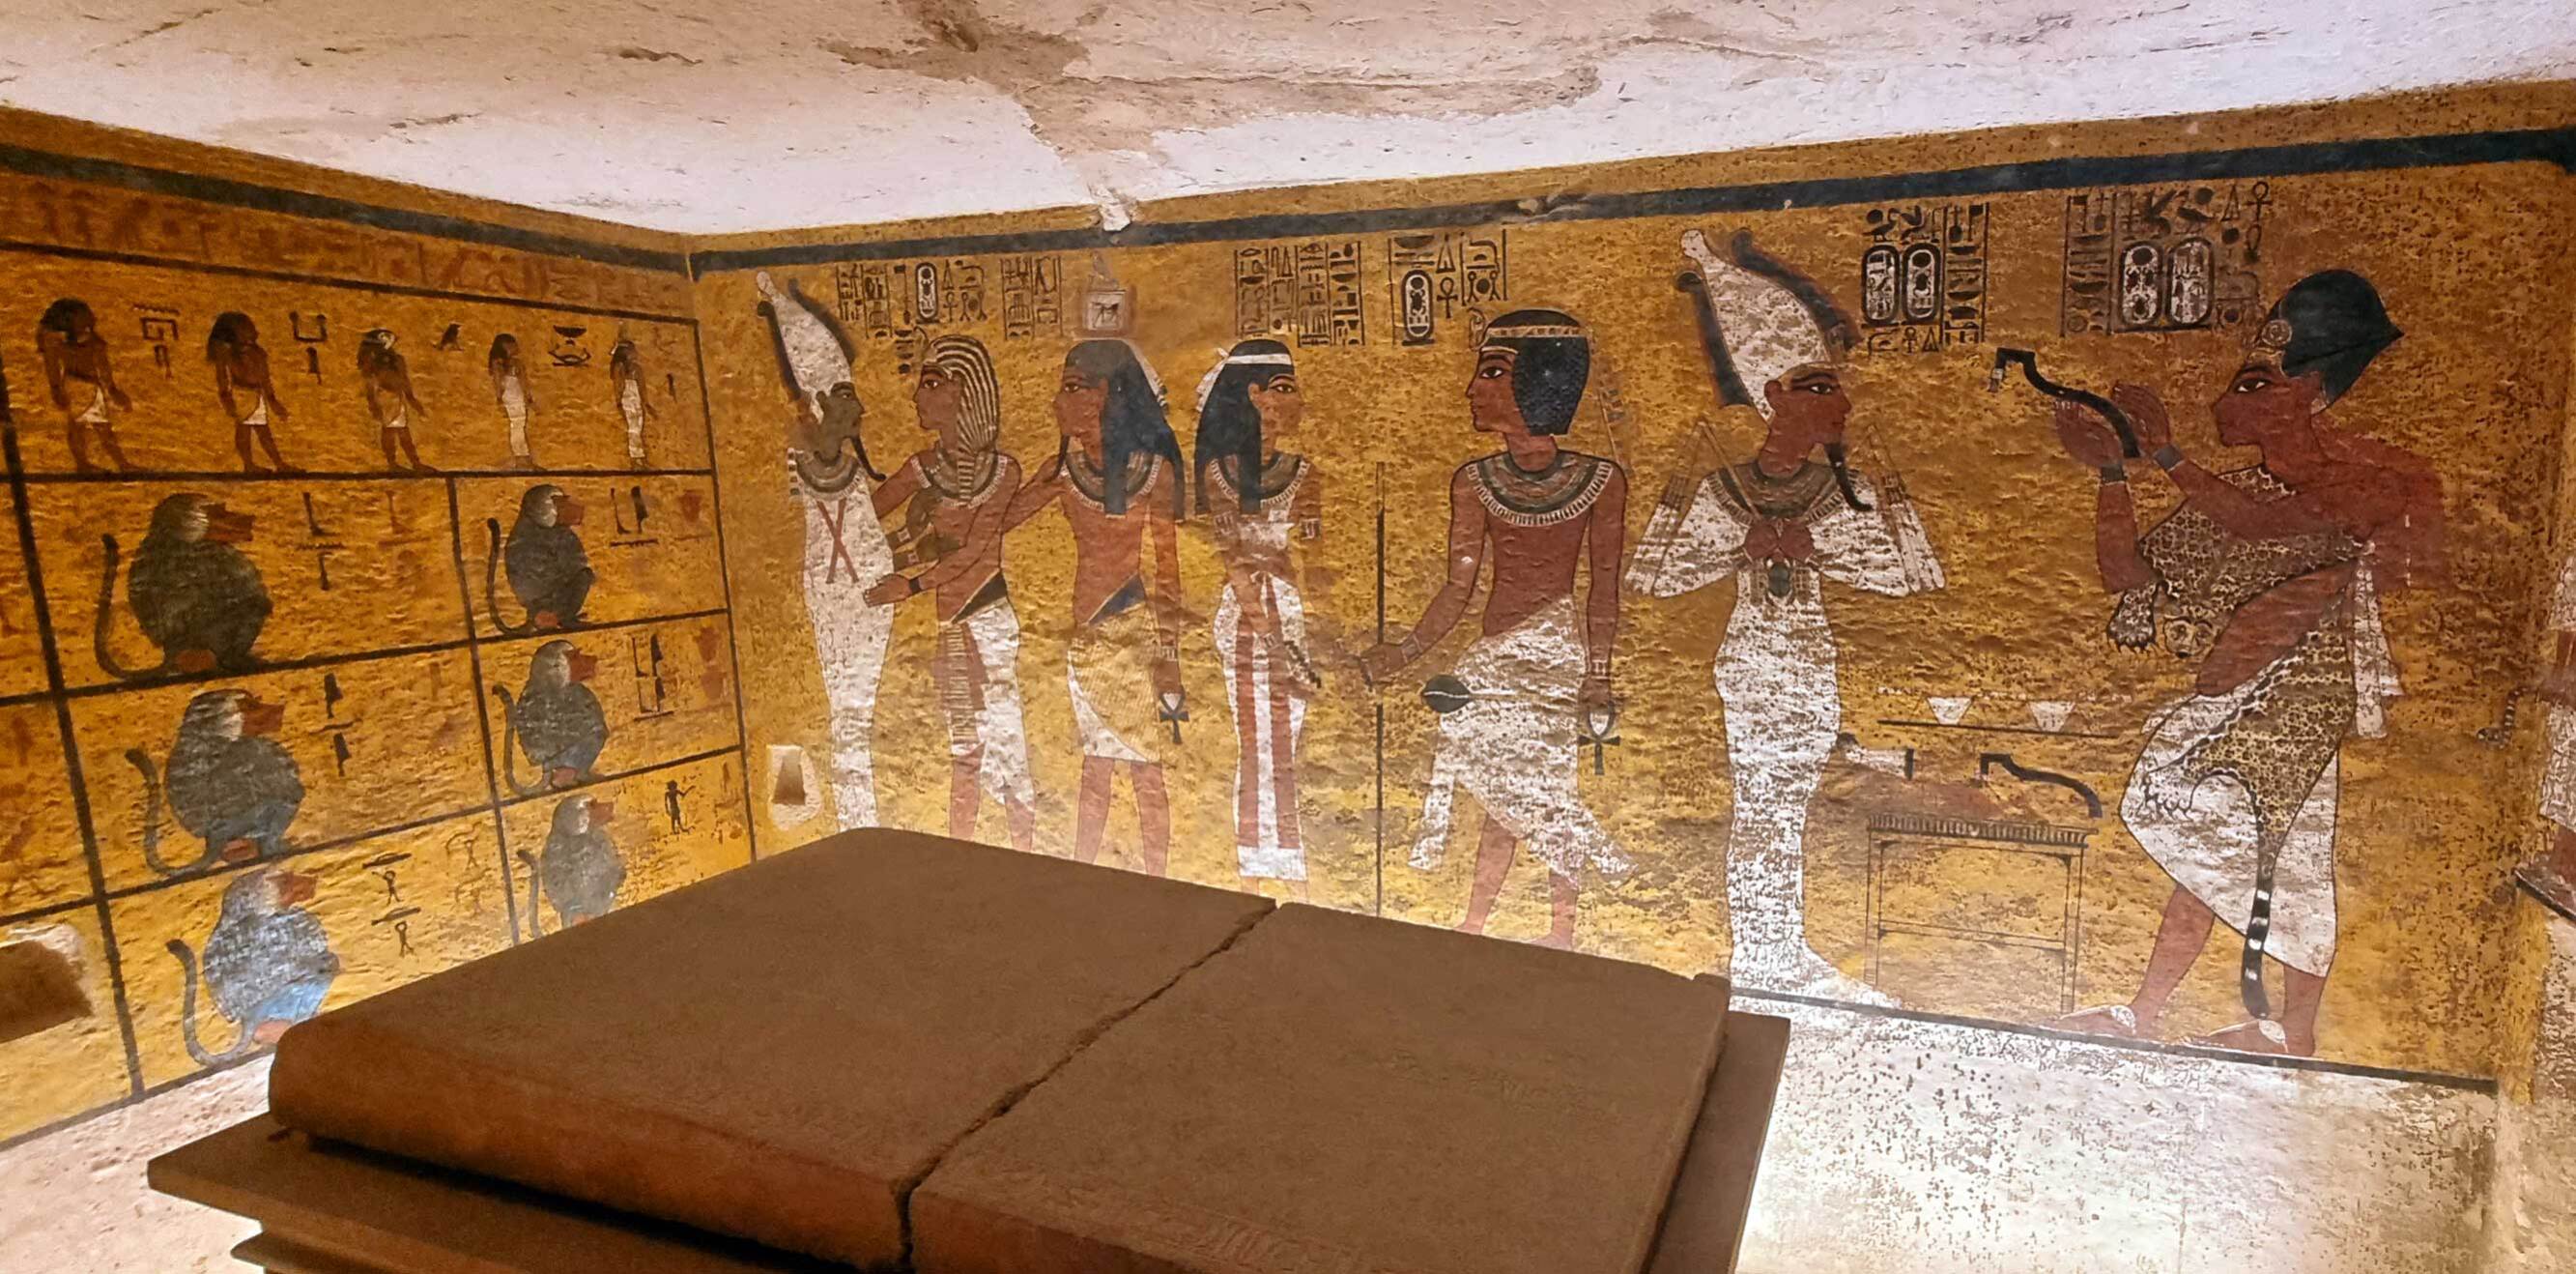 El 1922, Howard Carter va descobrir la tomba intacta de Tutankamon. Avui els enigmes sobre aquesta troballa continuen encoratjant mil històries.